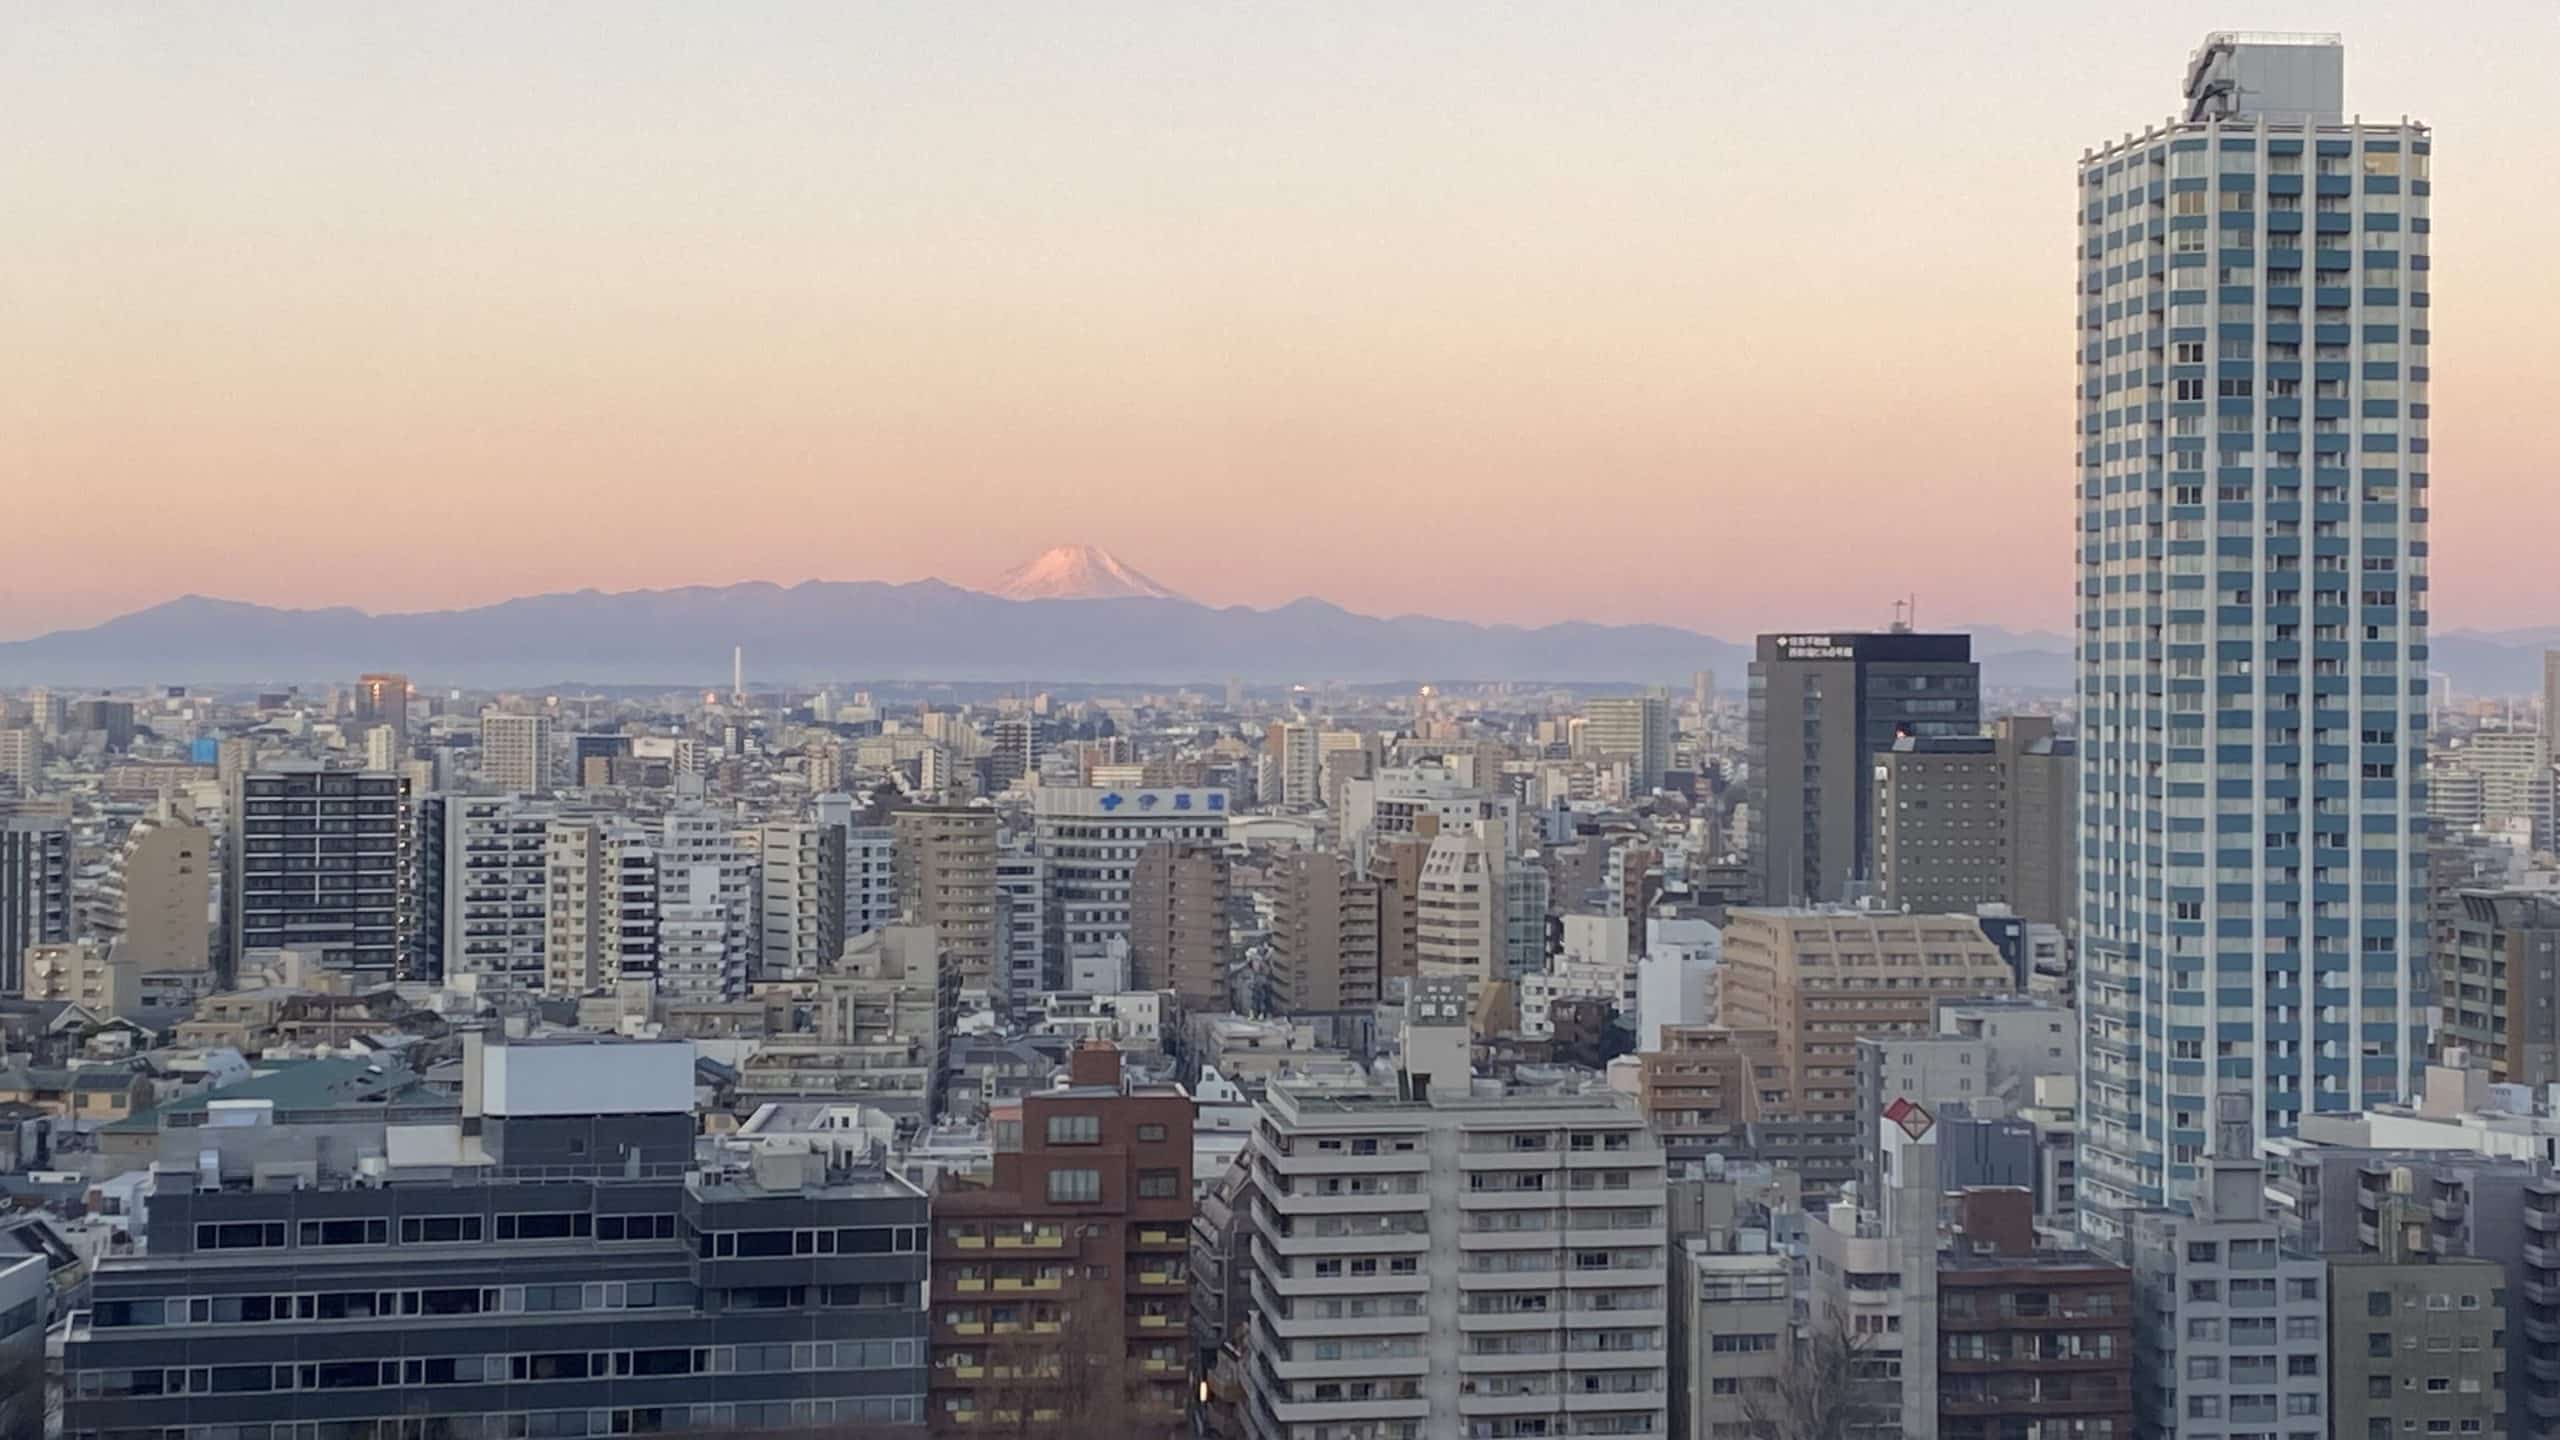 Aussicht auf den Mount Fuji von Tokio aus